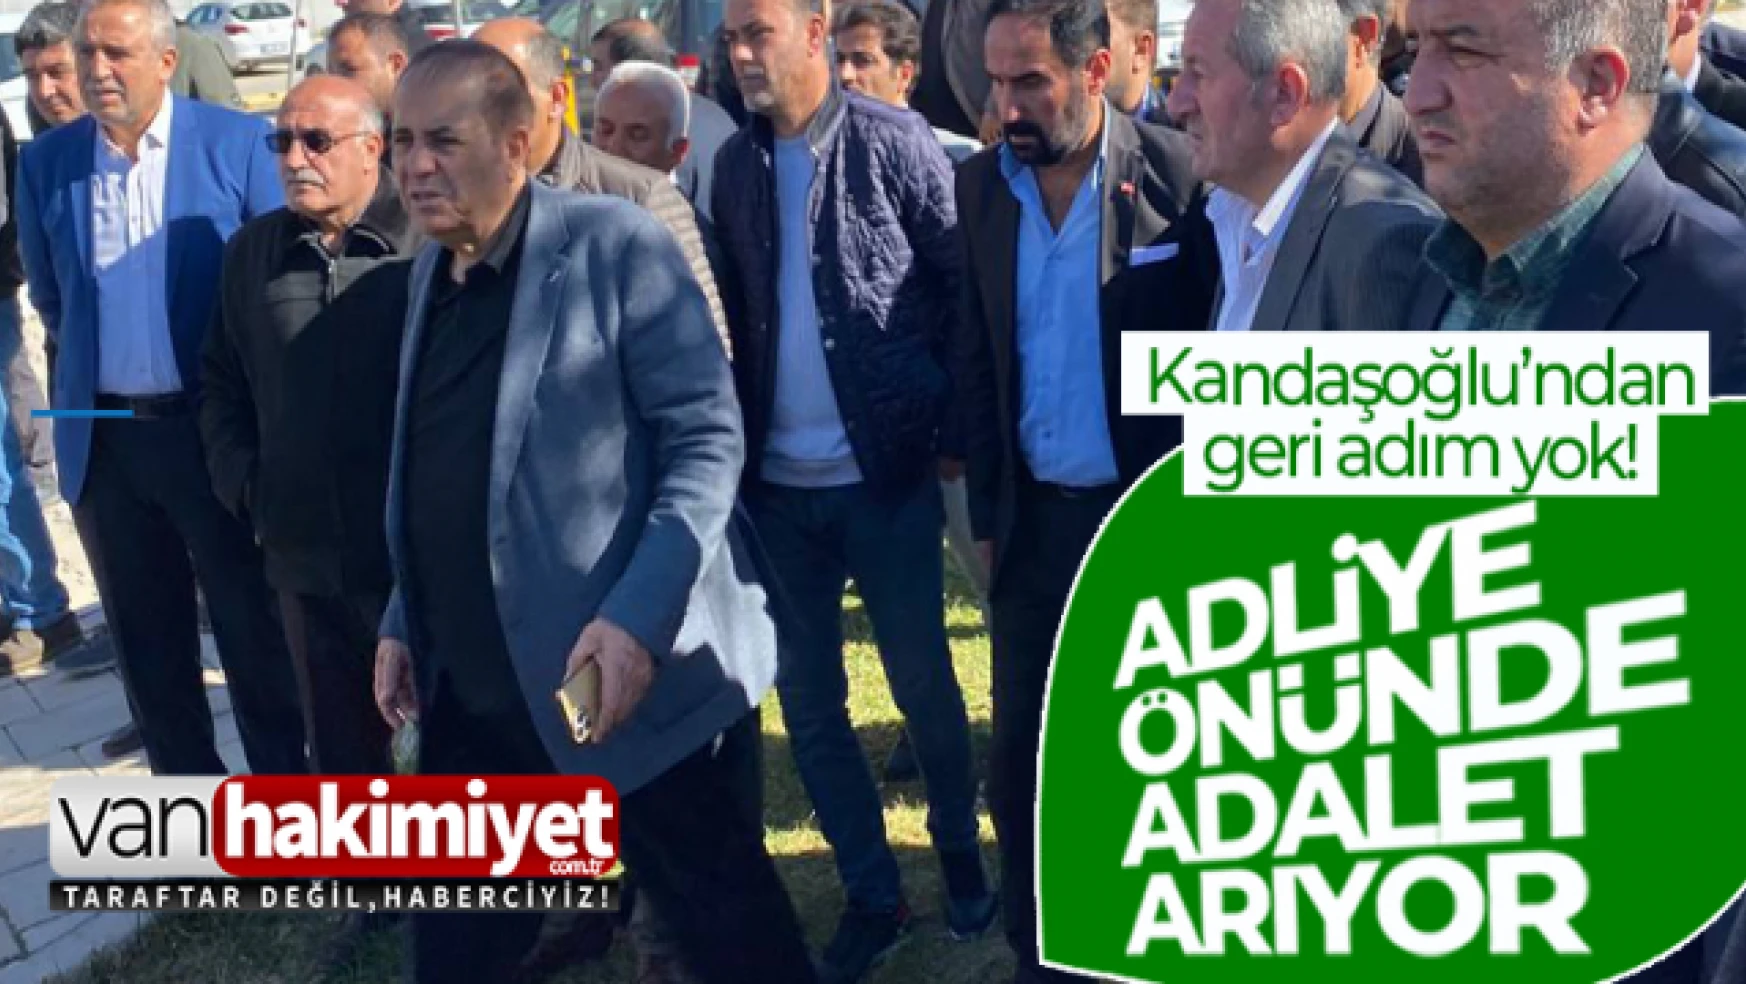 Van TSO Başkanı Kandaşoğlu, adliye önünde nöbet tutuyor